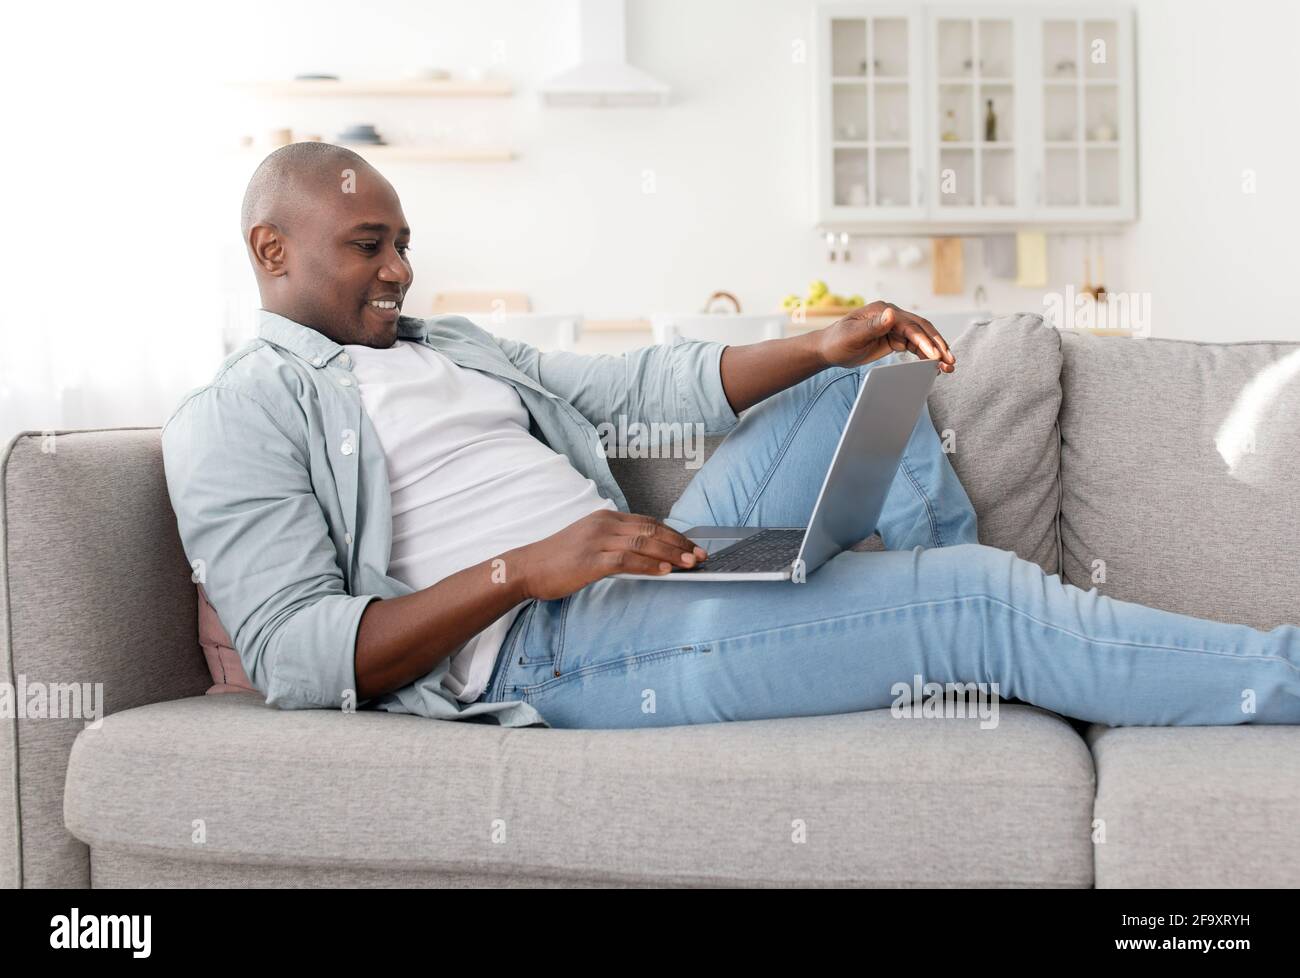 Buon freelance di mezza età che utilizza un computer portatile moderno, avendo lavoro part-time a casa, seduto sul divano Foto Stock